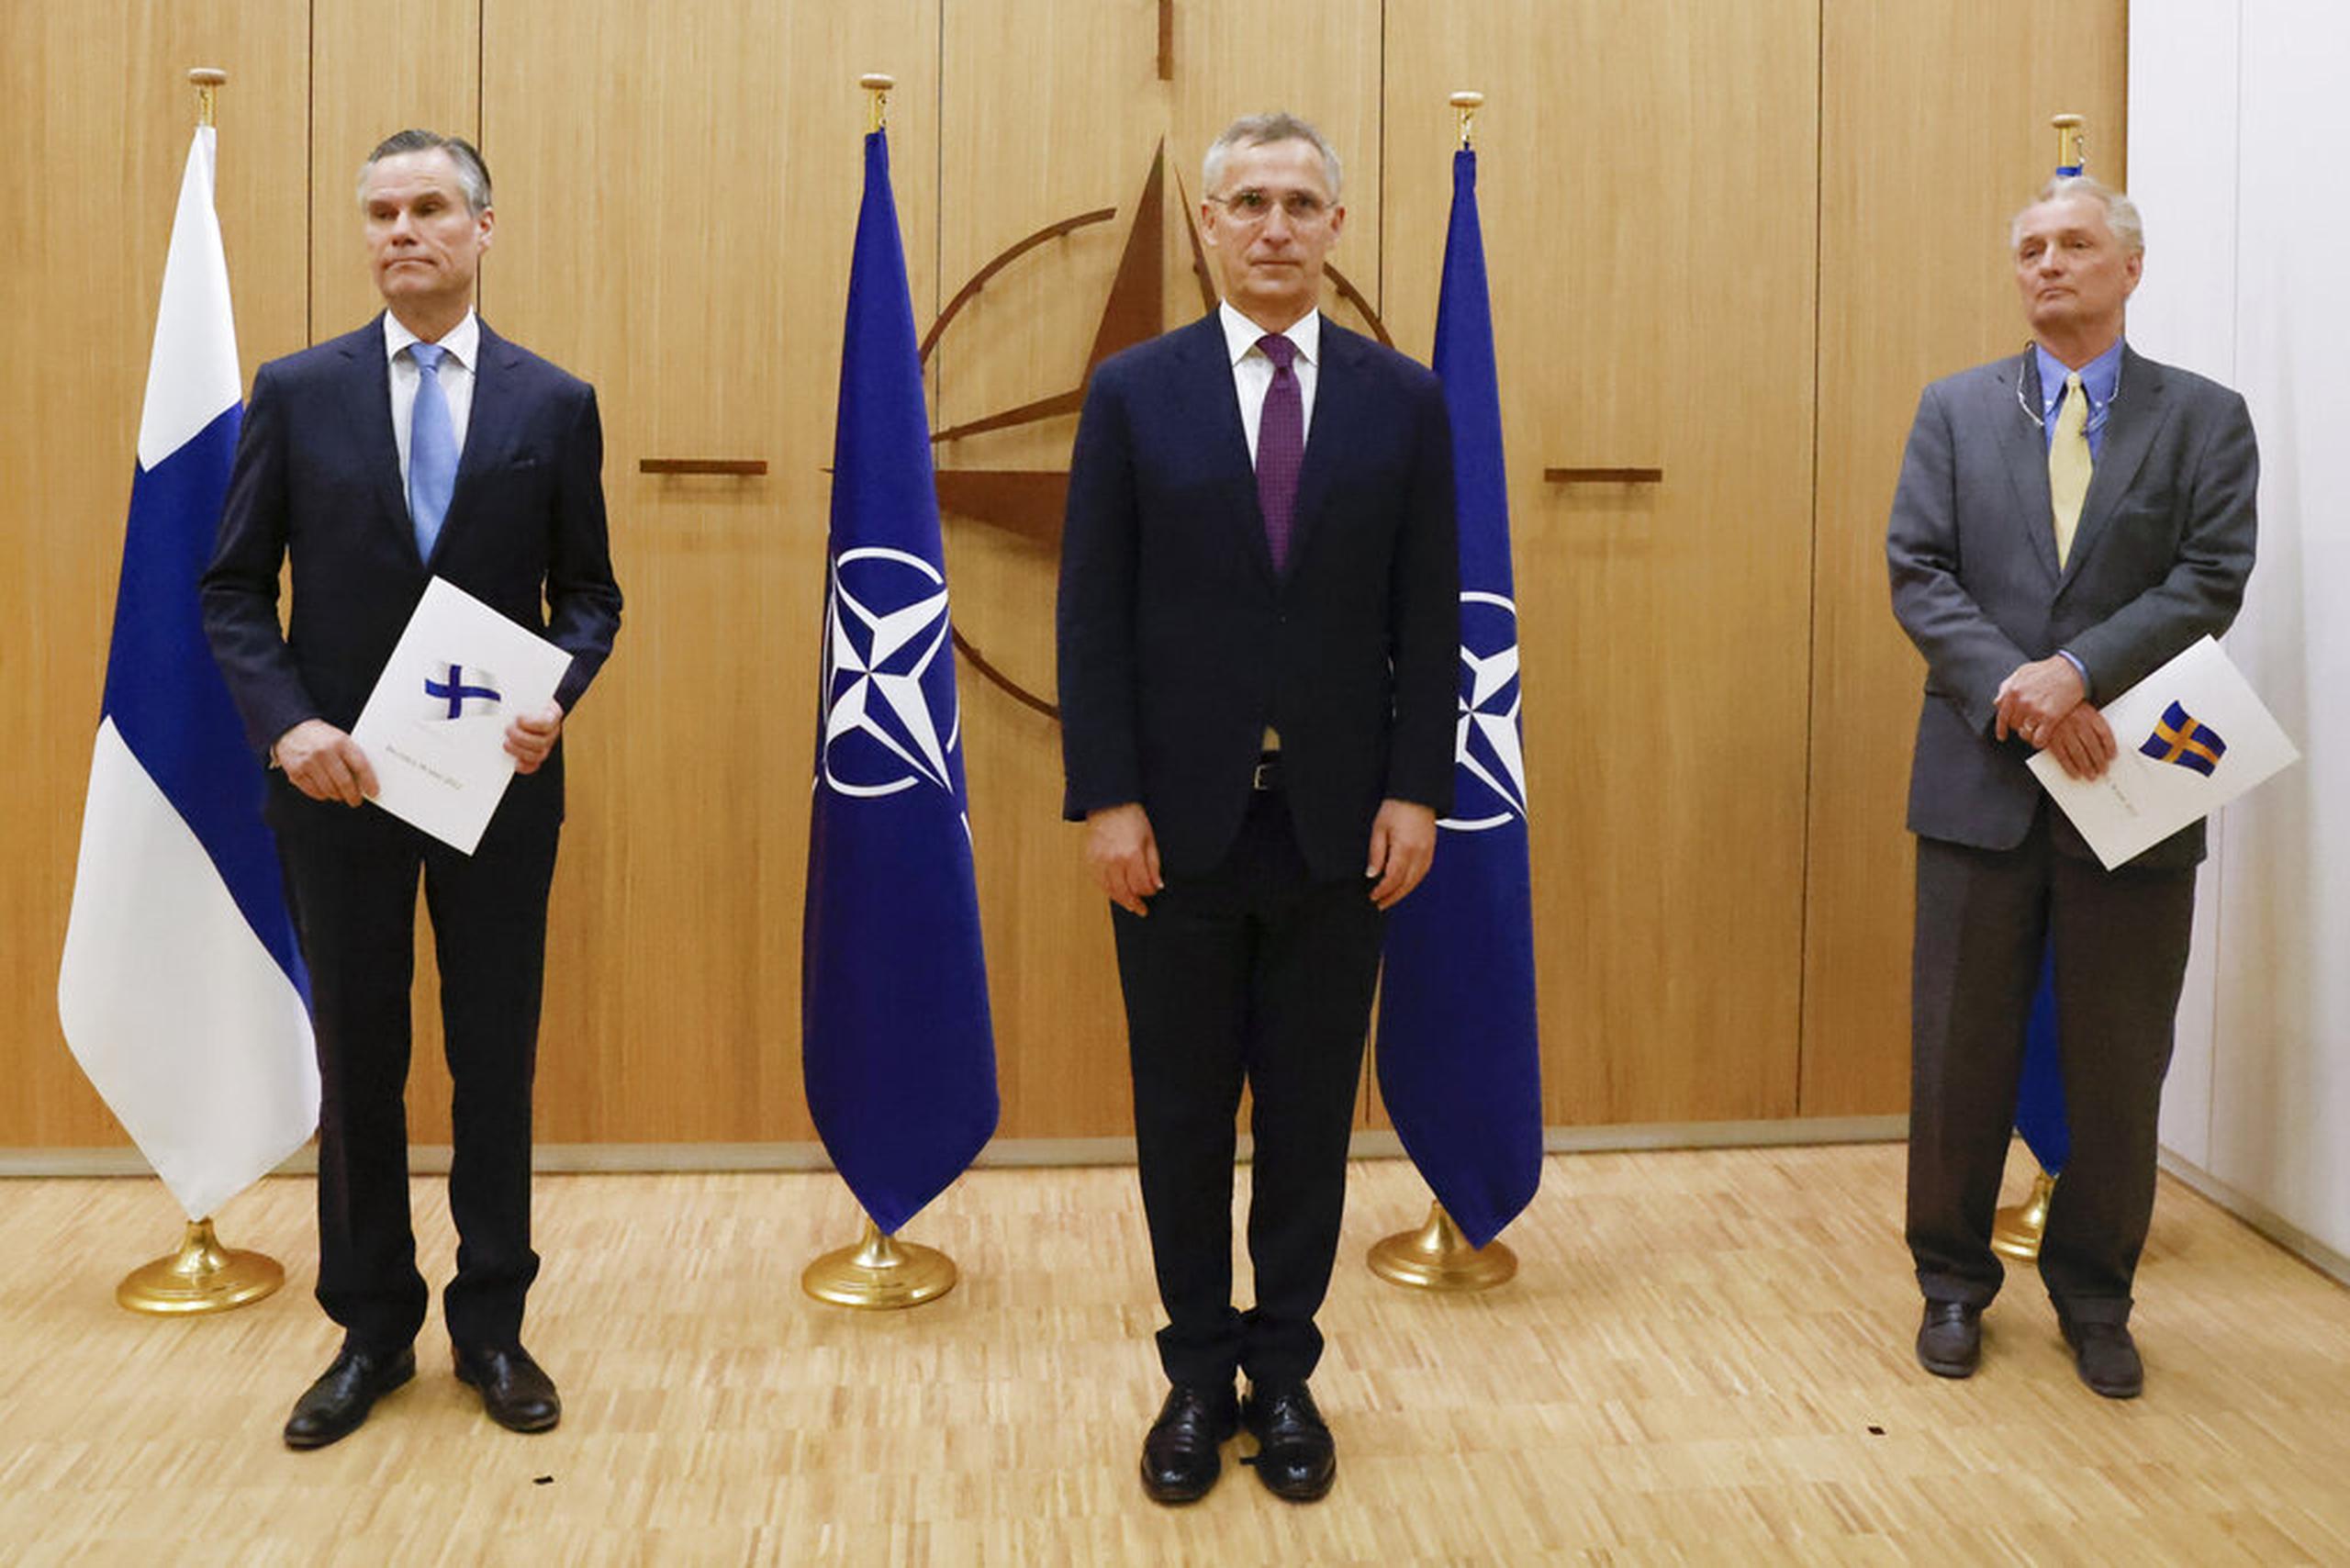 El embajador de Finlandia ante la OTAN, Klaus Korhonen; el secretario general de la OTAN, Jens Stoltenberg; y el embajador de Suecia ante la OTAN, Axel Wernhoff, asistieron a una ceremonia para conmemorar la solicitud de ingreso de Suecia y Finlandia este 18 de mayo en Bruselas, Bélgica.